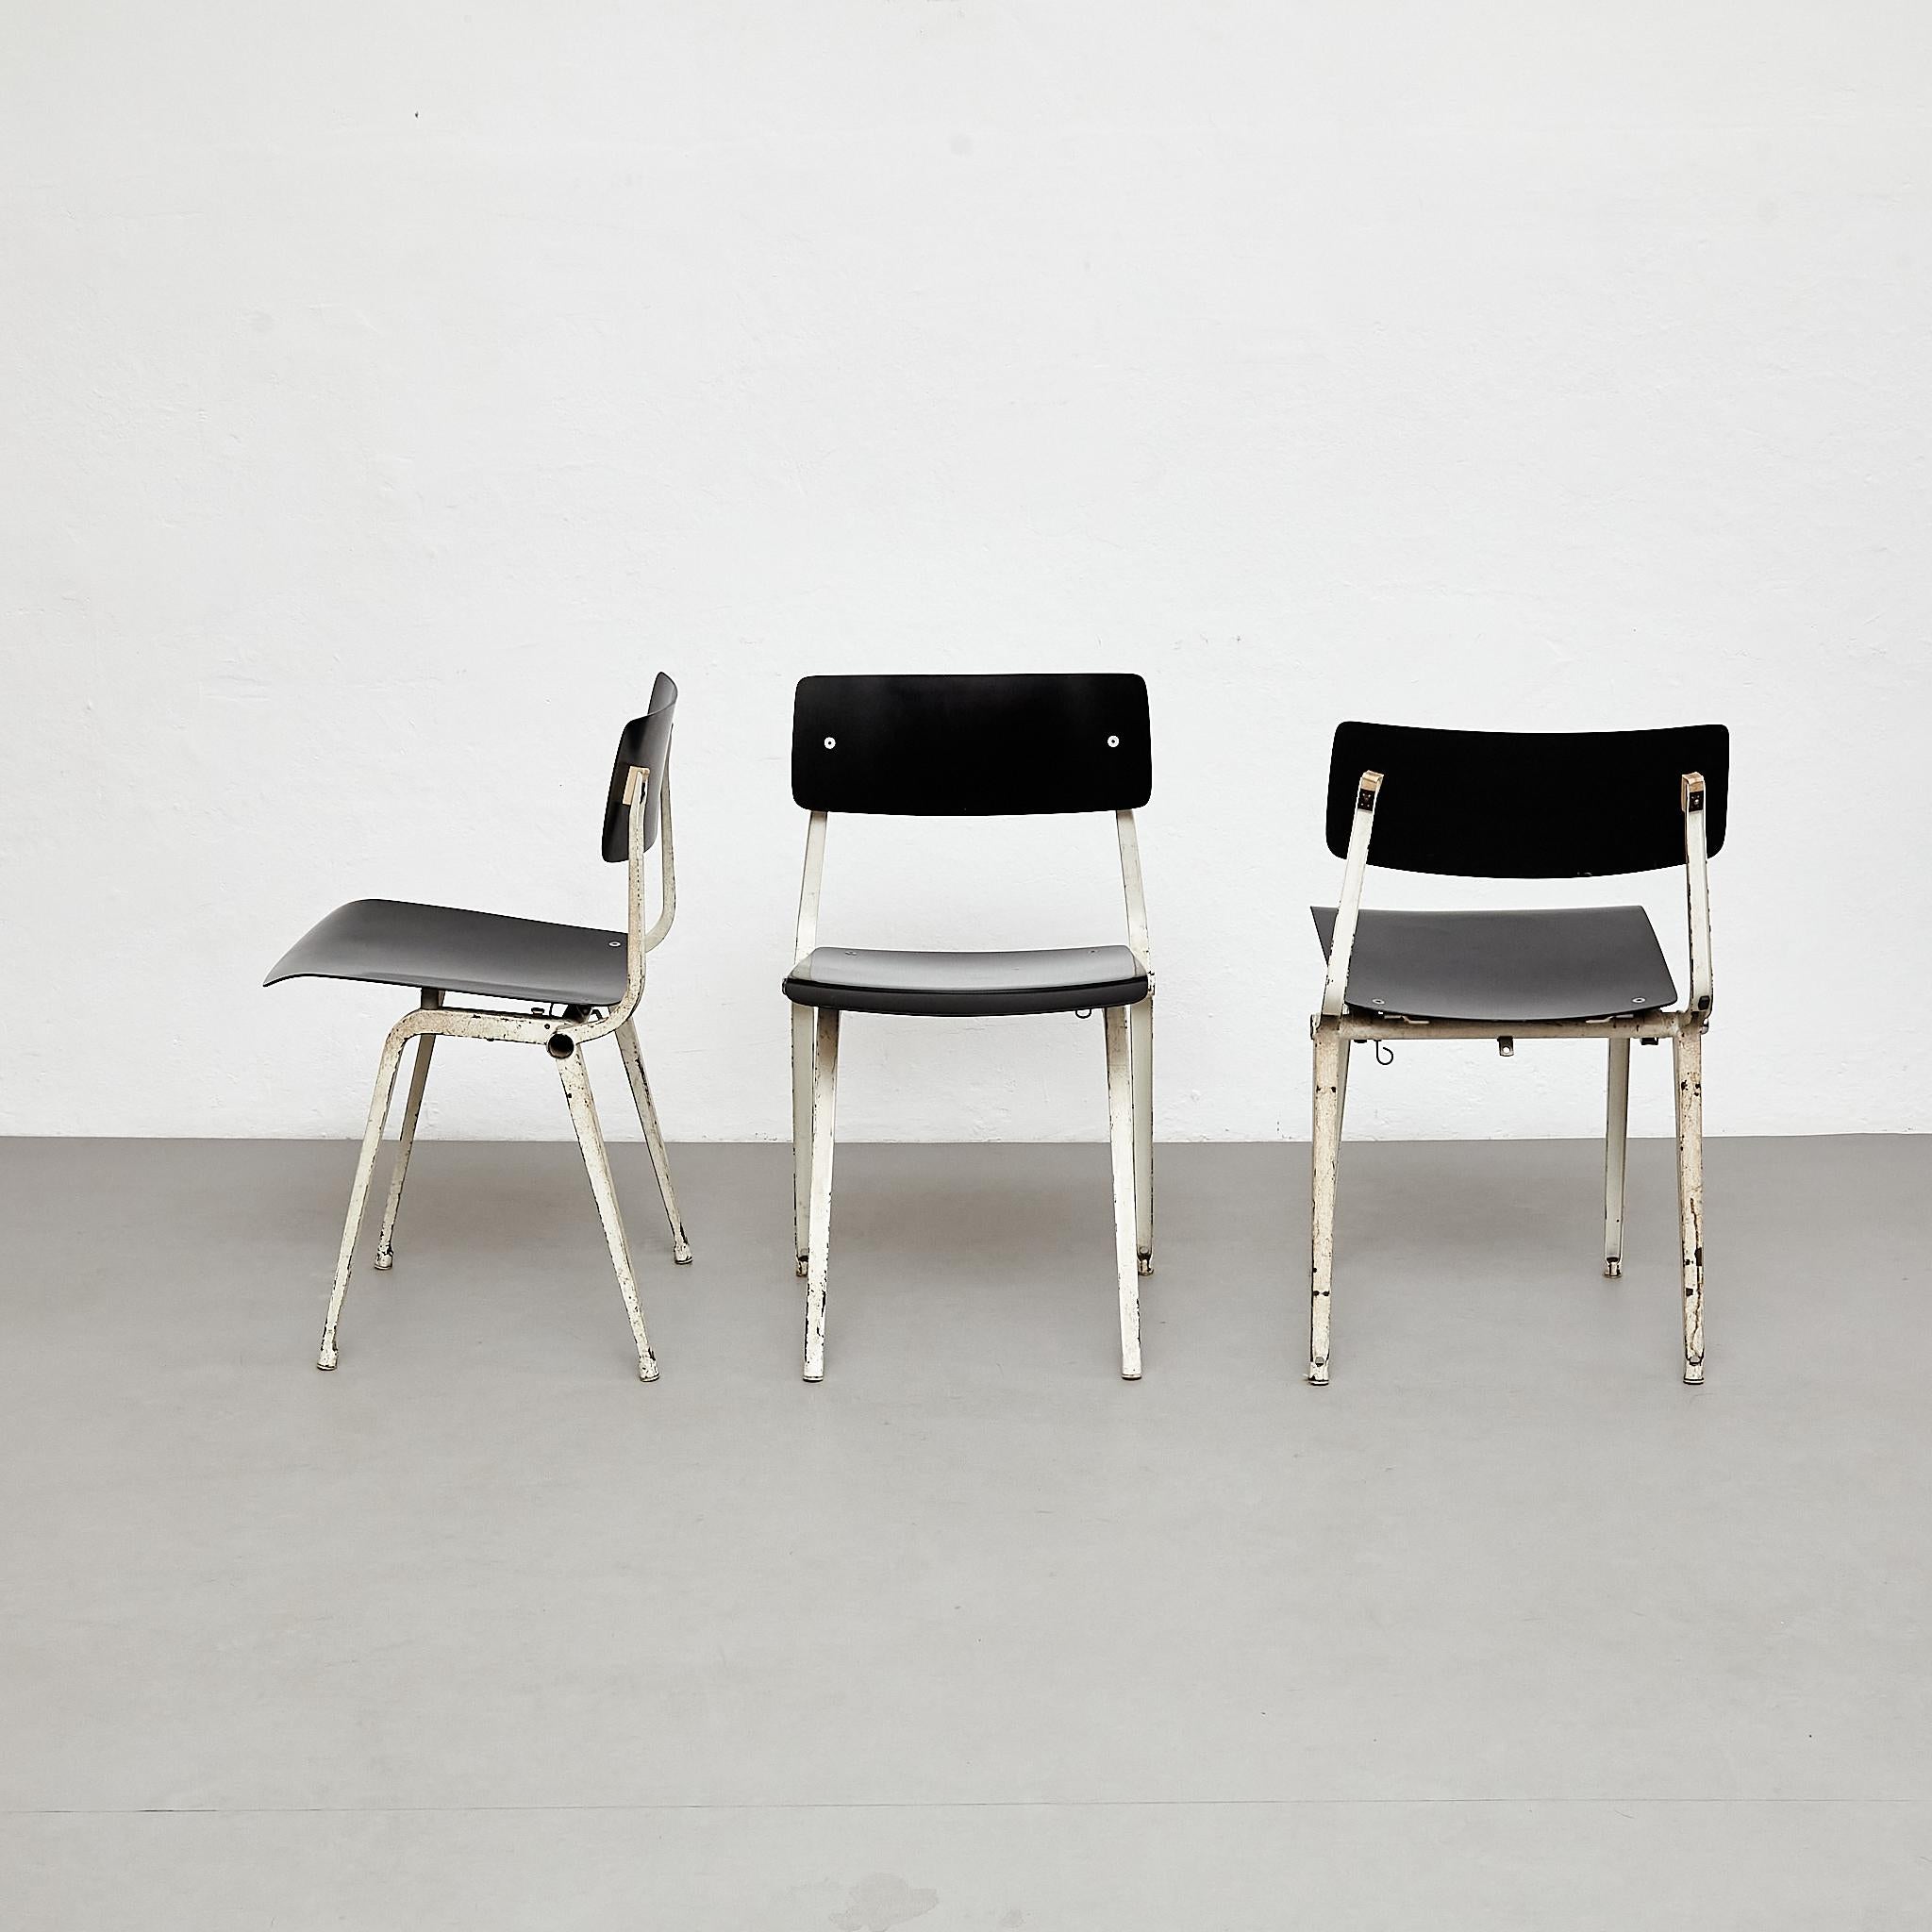 Rarissime ensemble de trois chaises de théâtre conçues par Kramer en 1959.
Fabriqué aux Pays-Bas par Ahrend de Cyrkel.

Tous les objets sont en bon état, avec une légère usure due à l'âge et à l'utilisation. 

Matériaux :
Métal

Dimensions